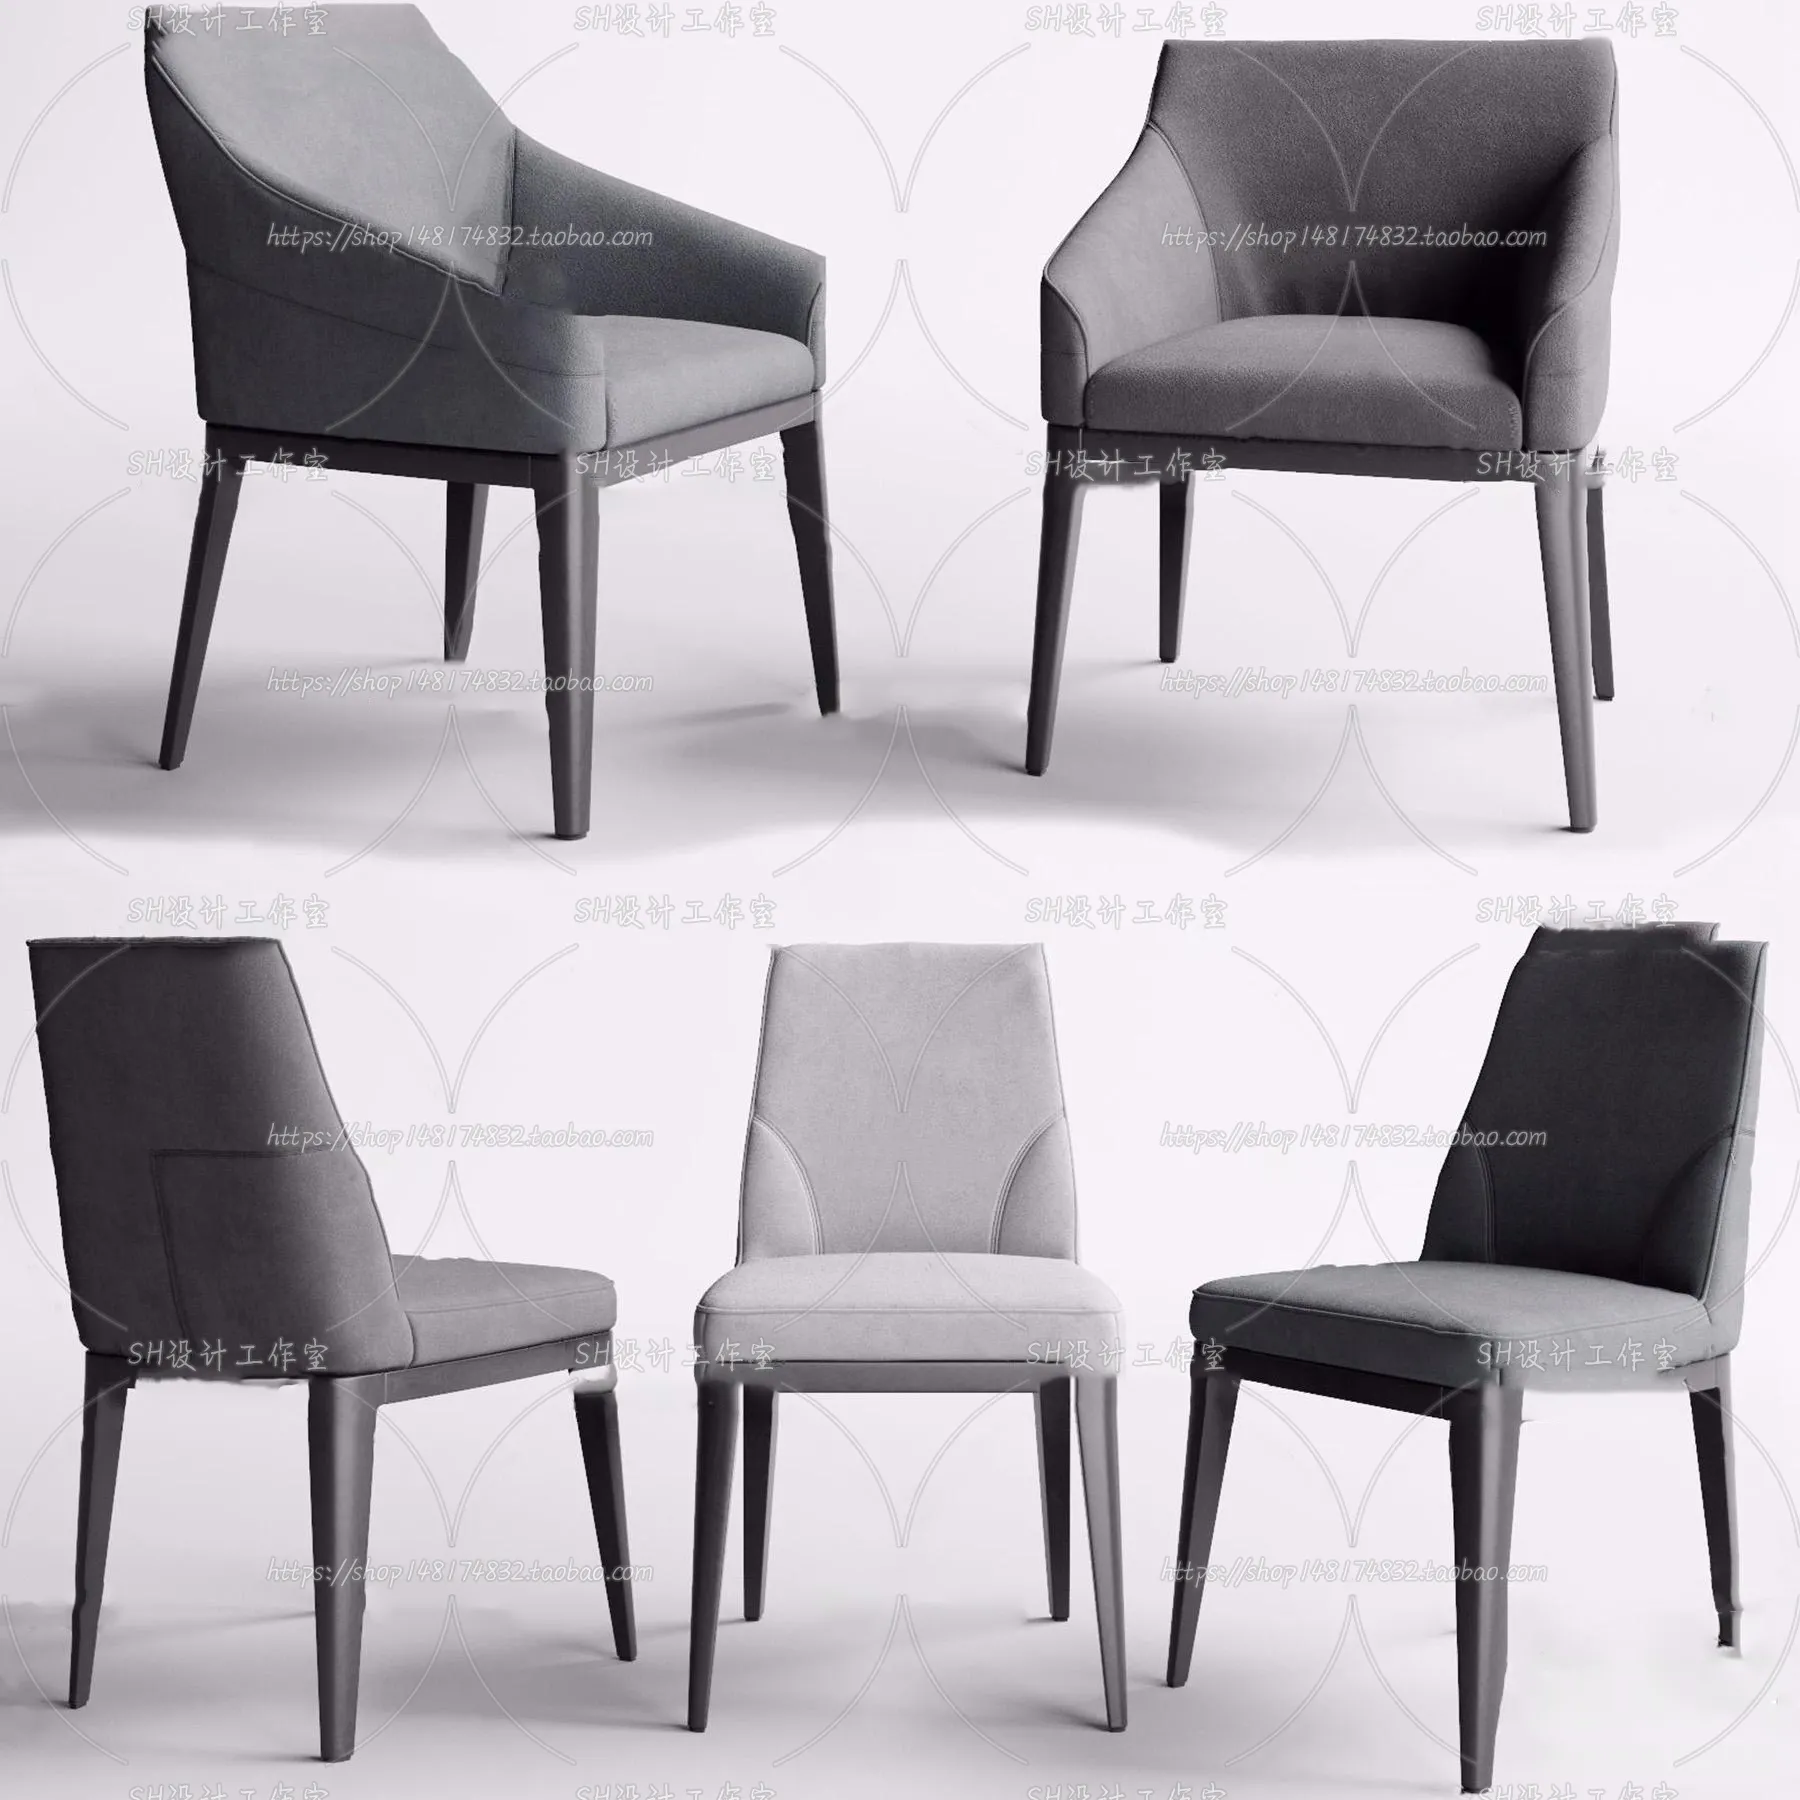 Chair – Single Chair 3D Models – 2021